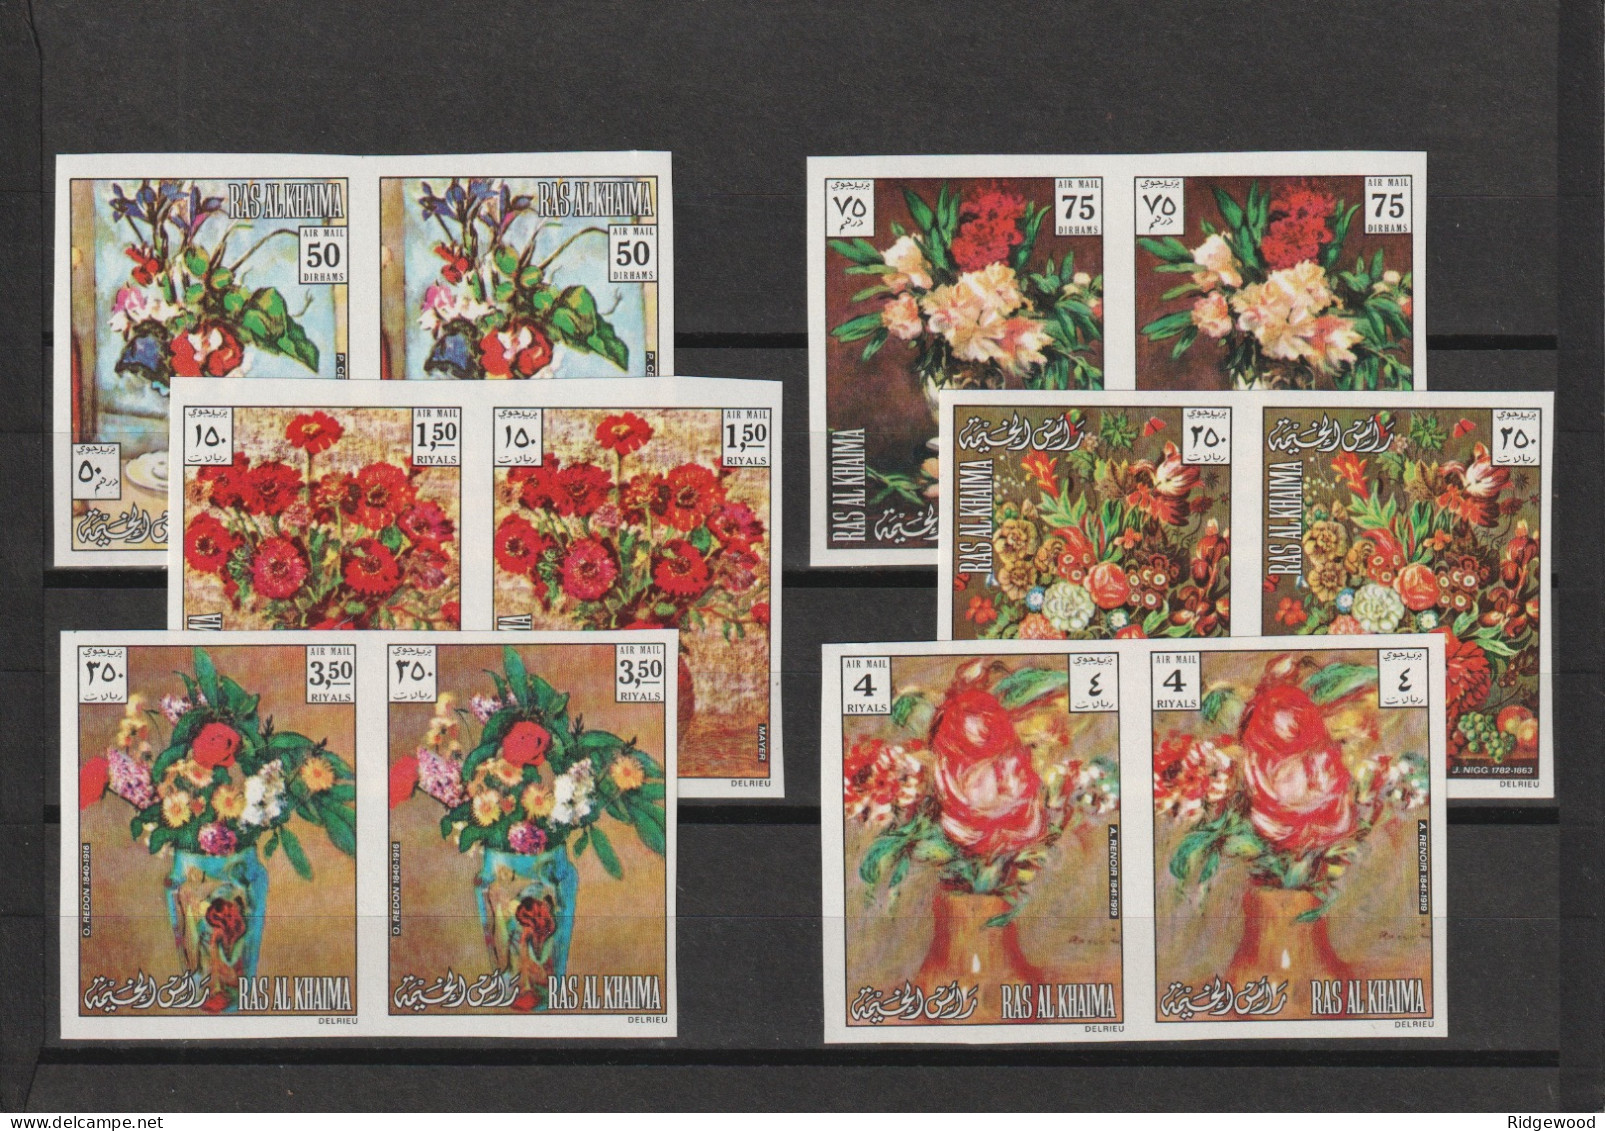 1972  Ras Al Khaima - Flower Paintings - Two Complete Sets -  Mi 865-870 Imperf. Marginal Pairs - MNH/UMM - Ras Al-Khaima